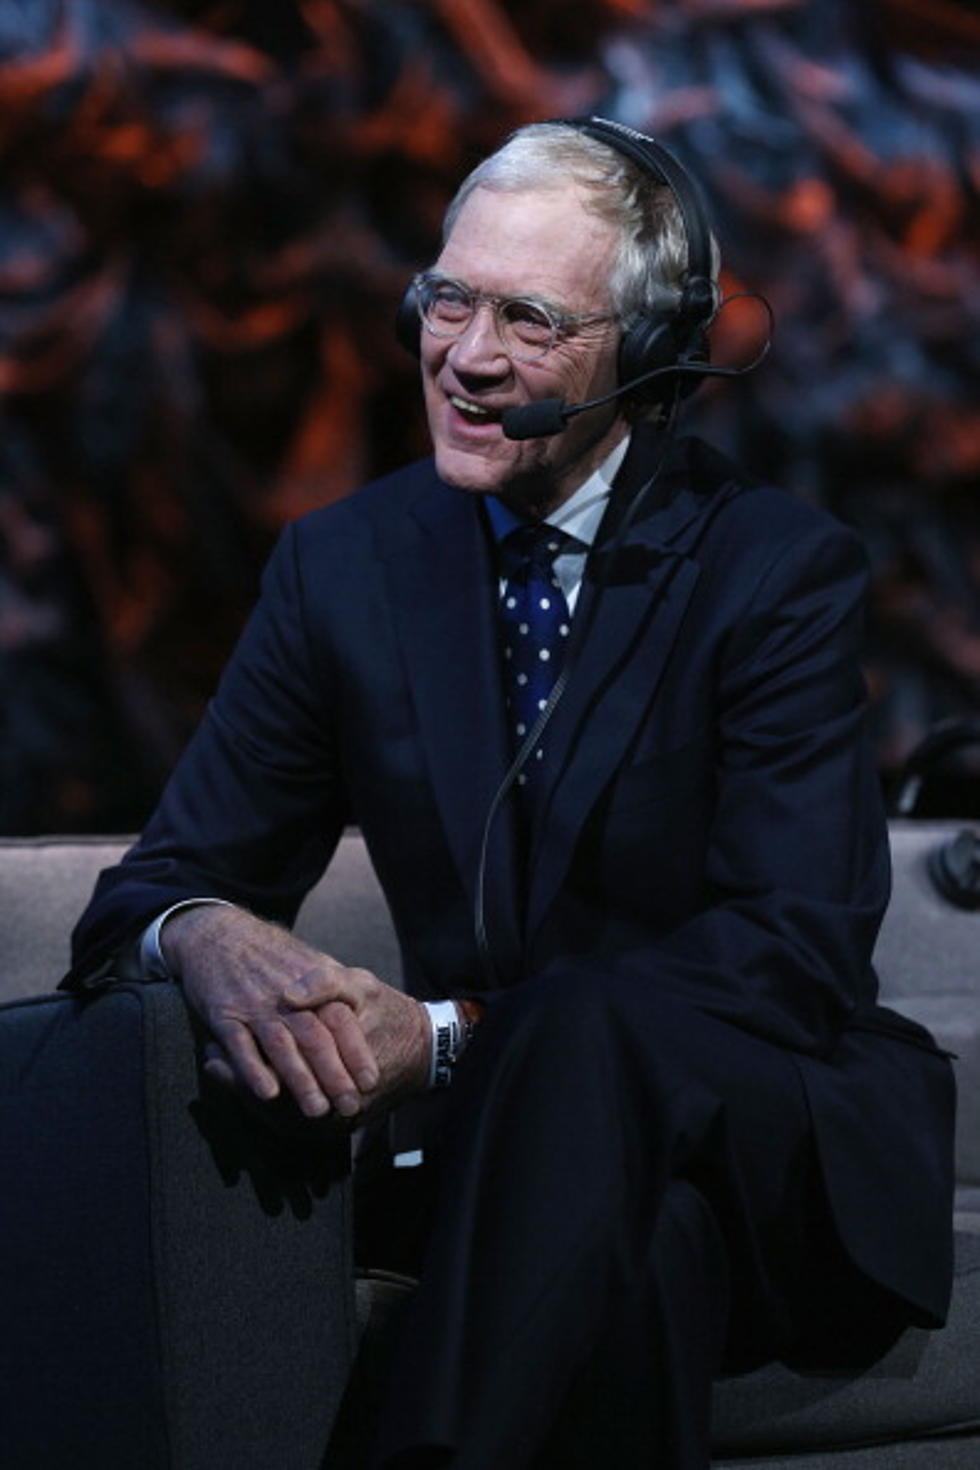 David Letterman Retiring In 2015